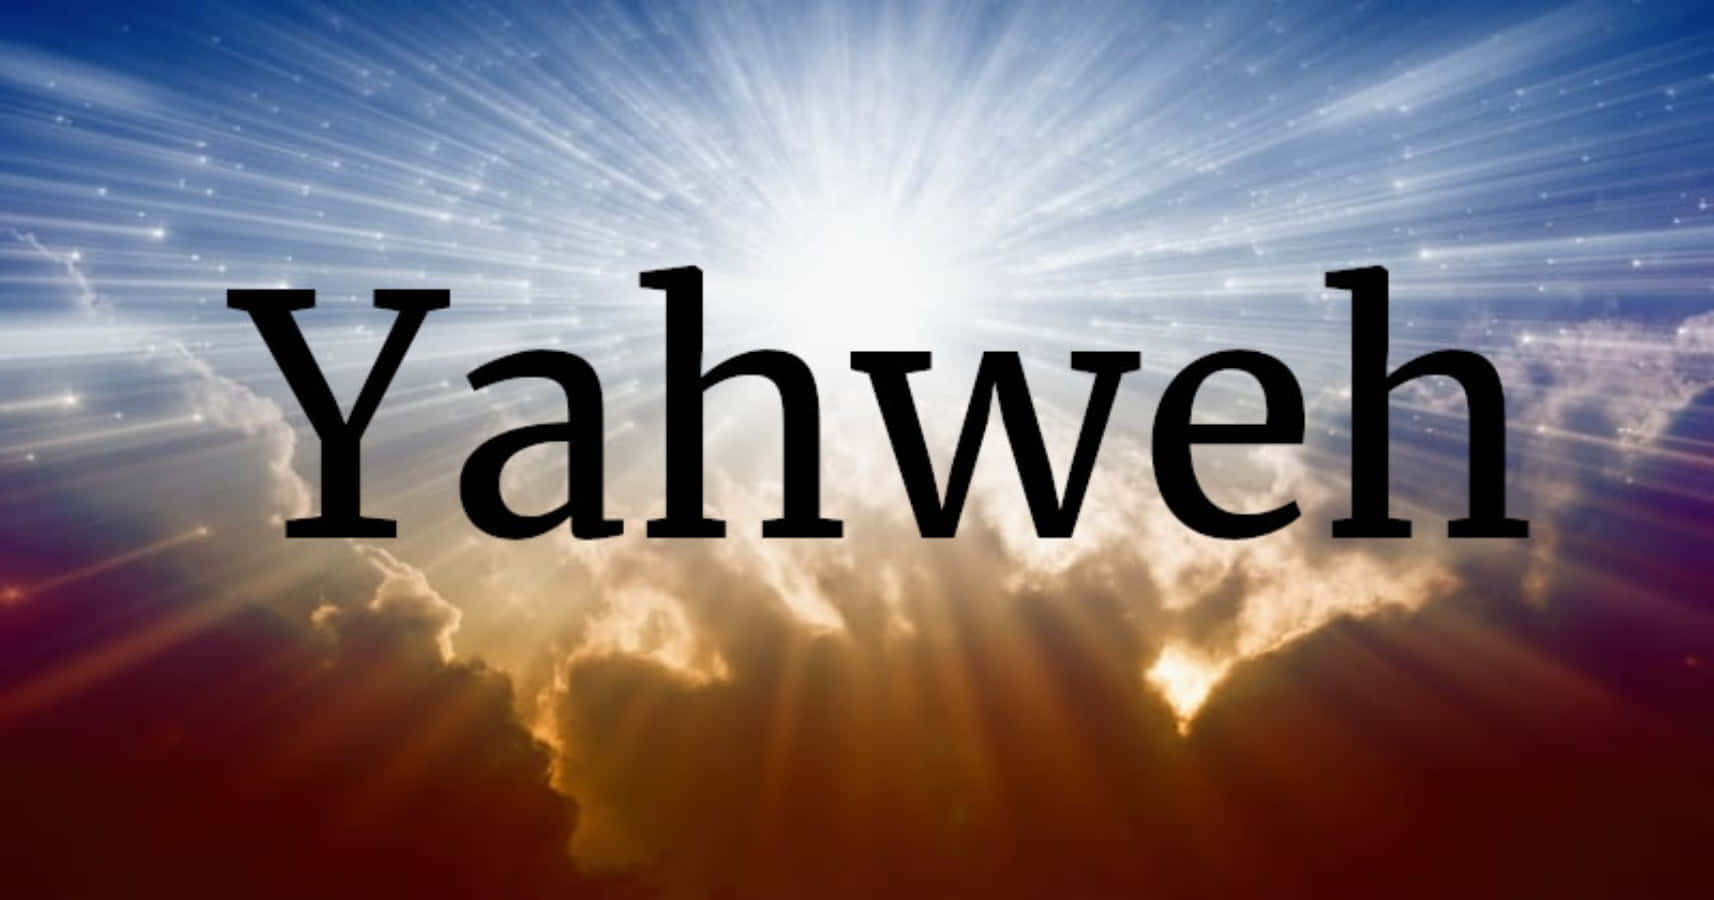 Herrenöver Himlens Och Jordens, Yahweh